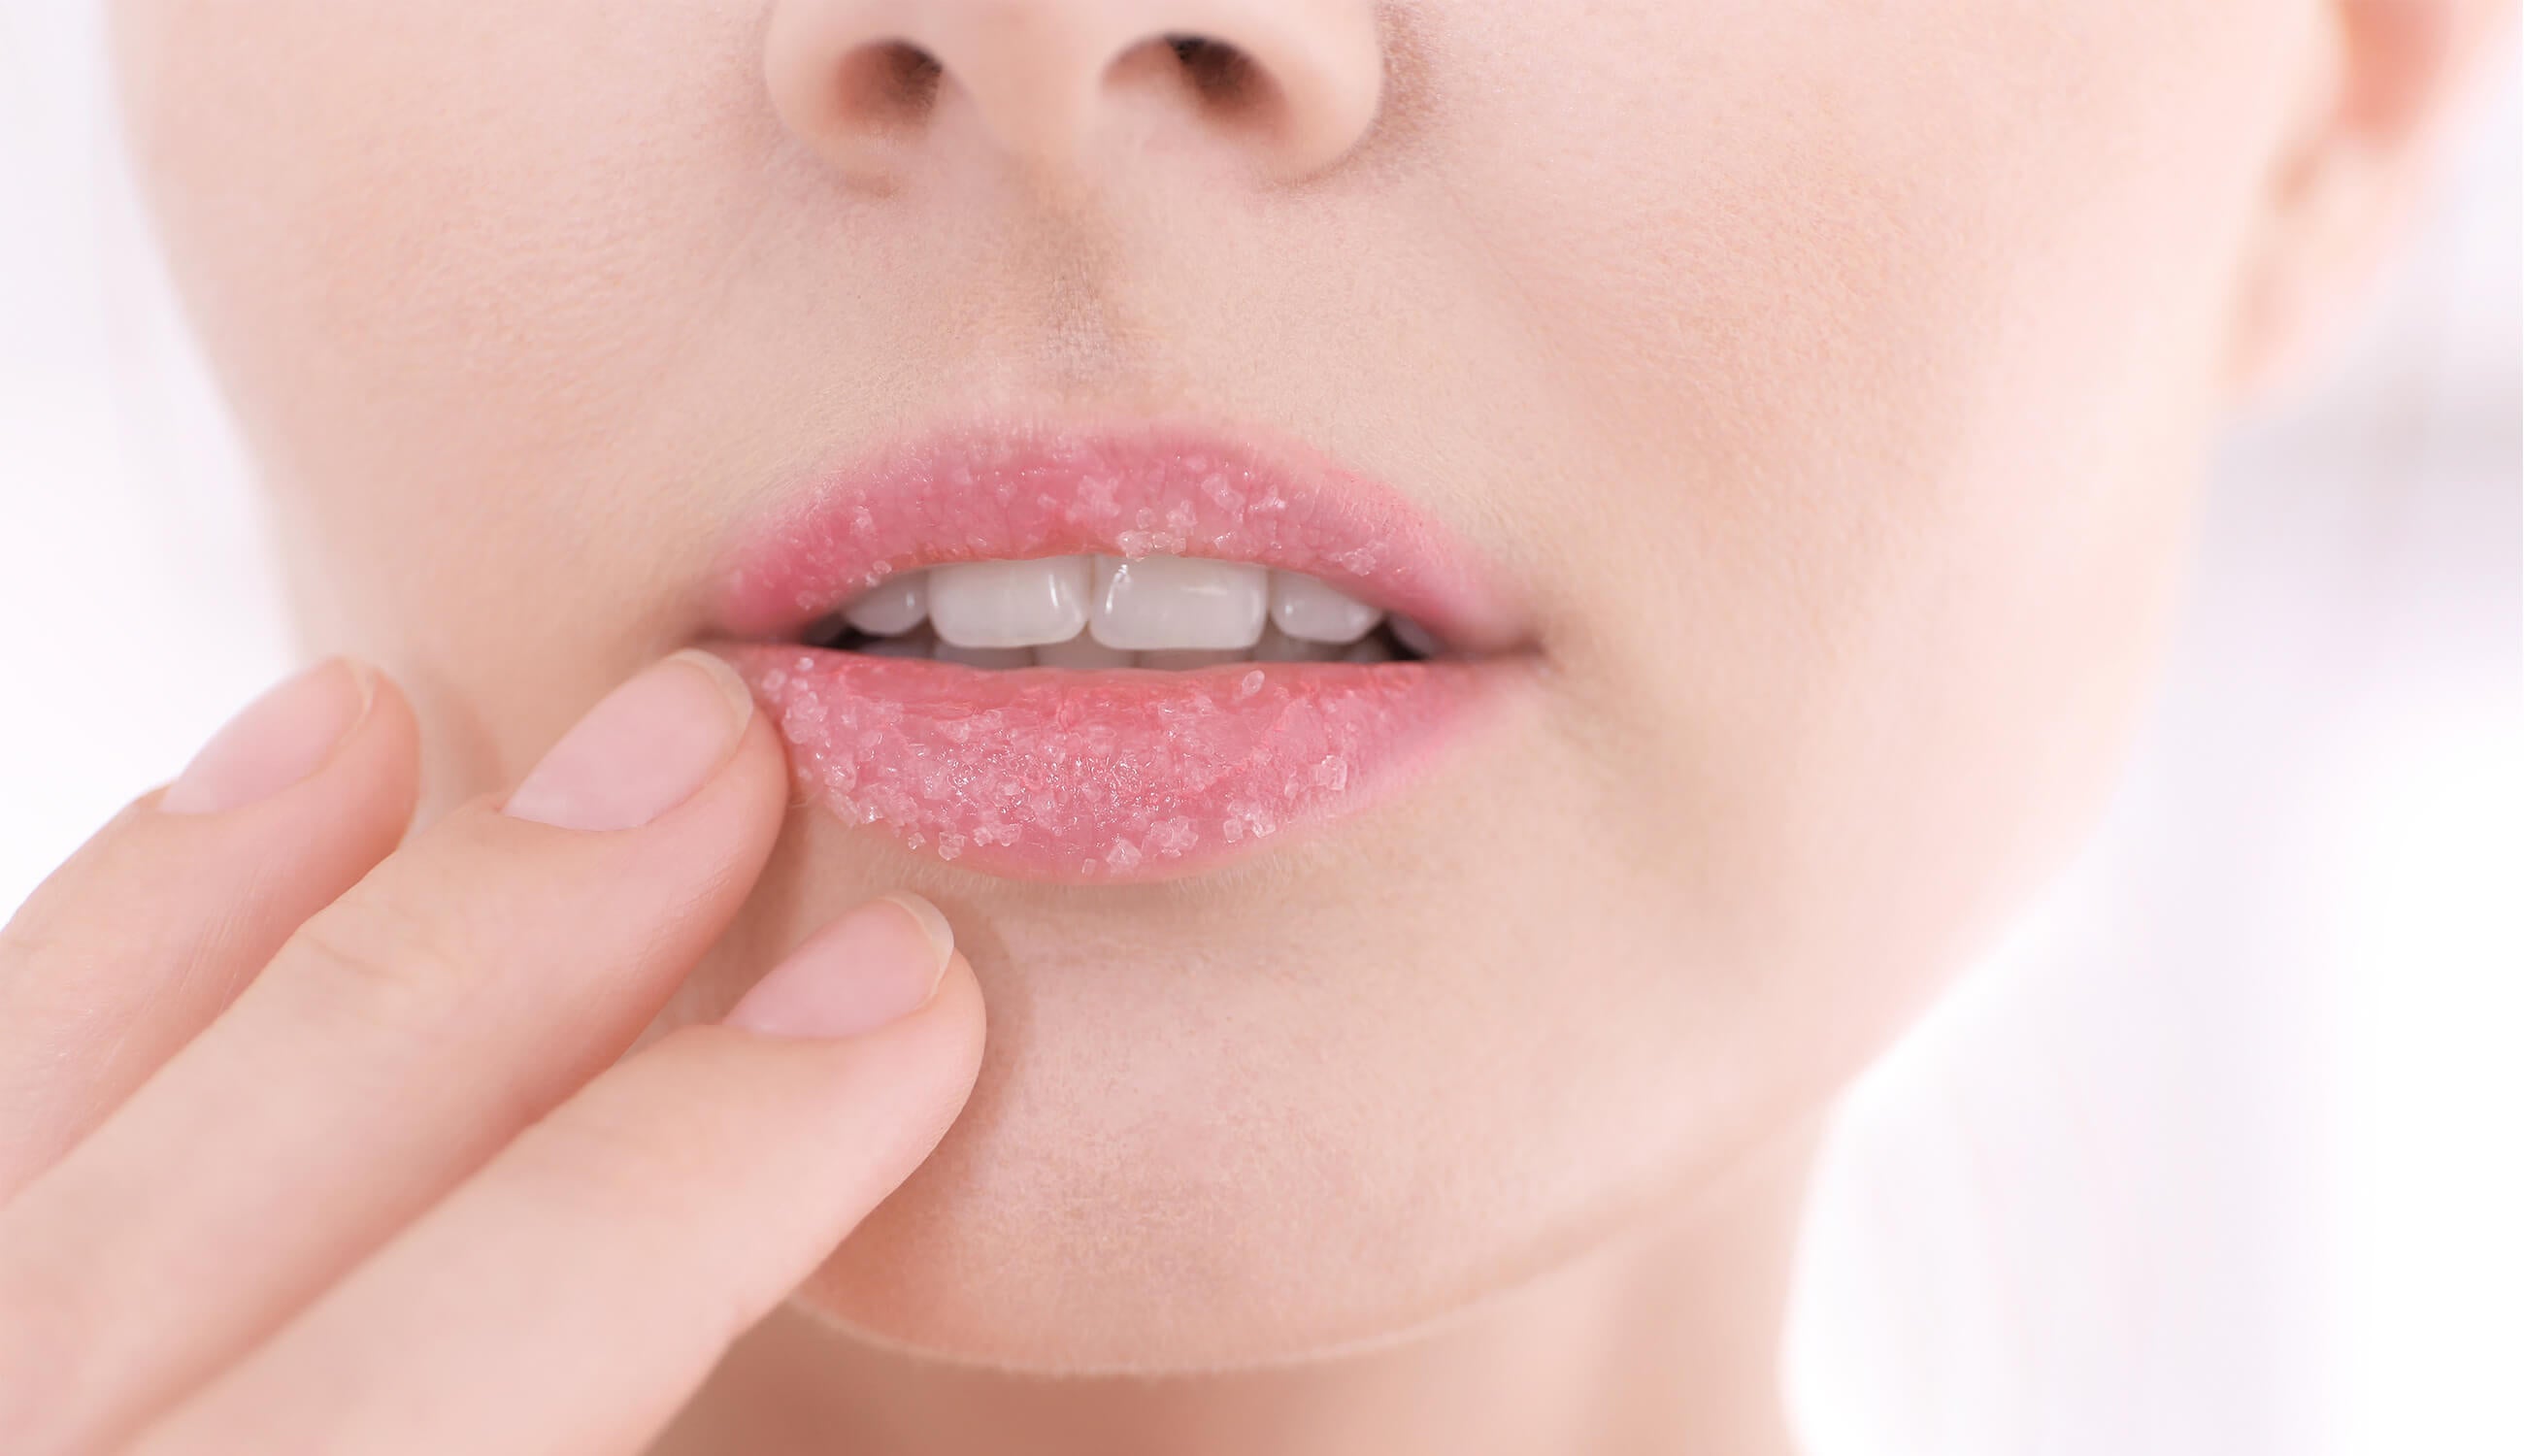 Closeup of lips covered in sugar scrub